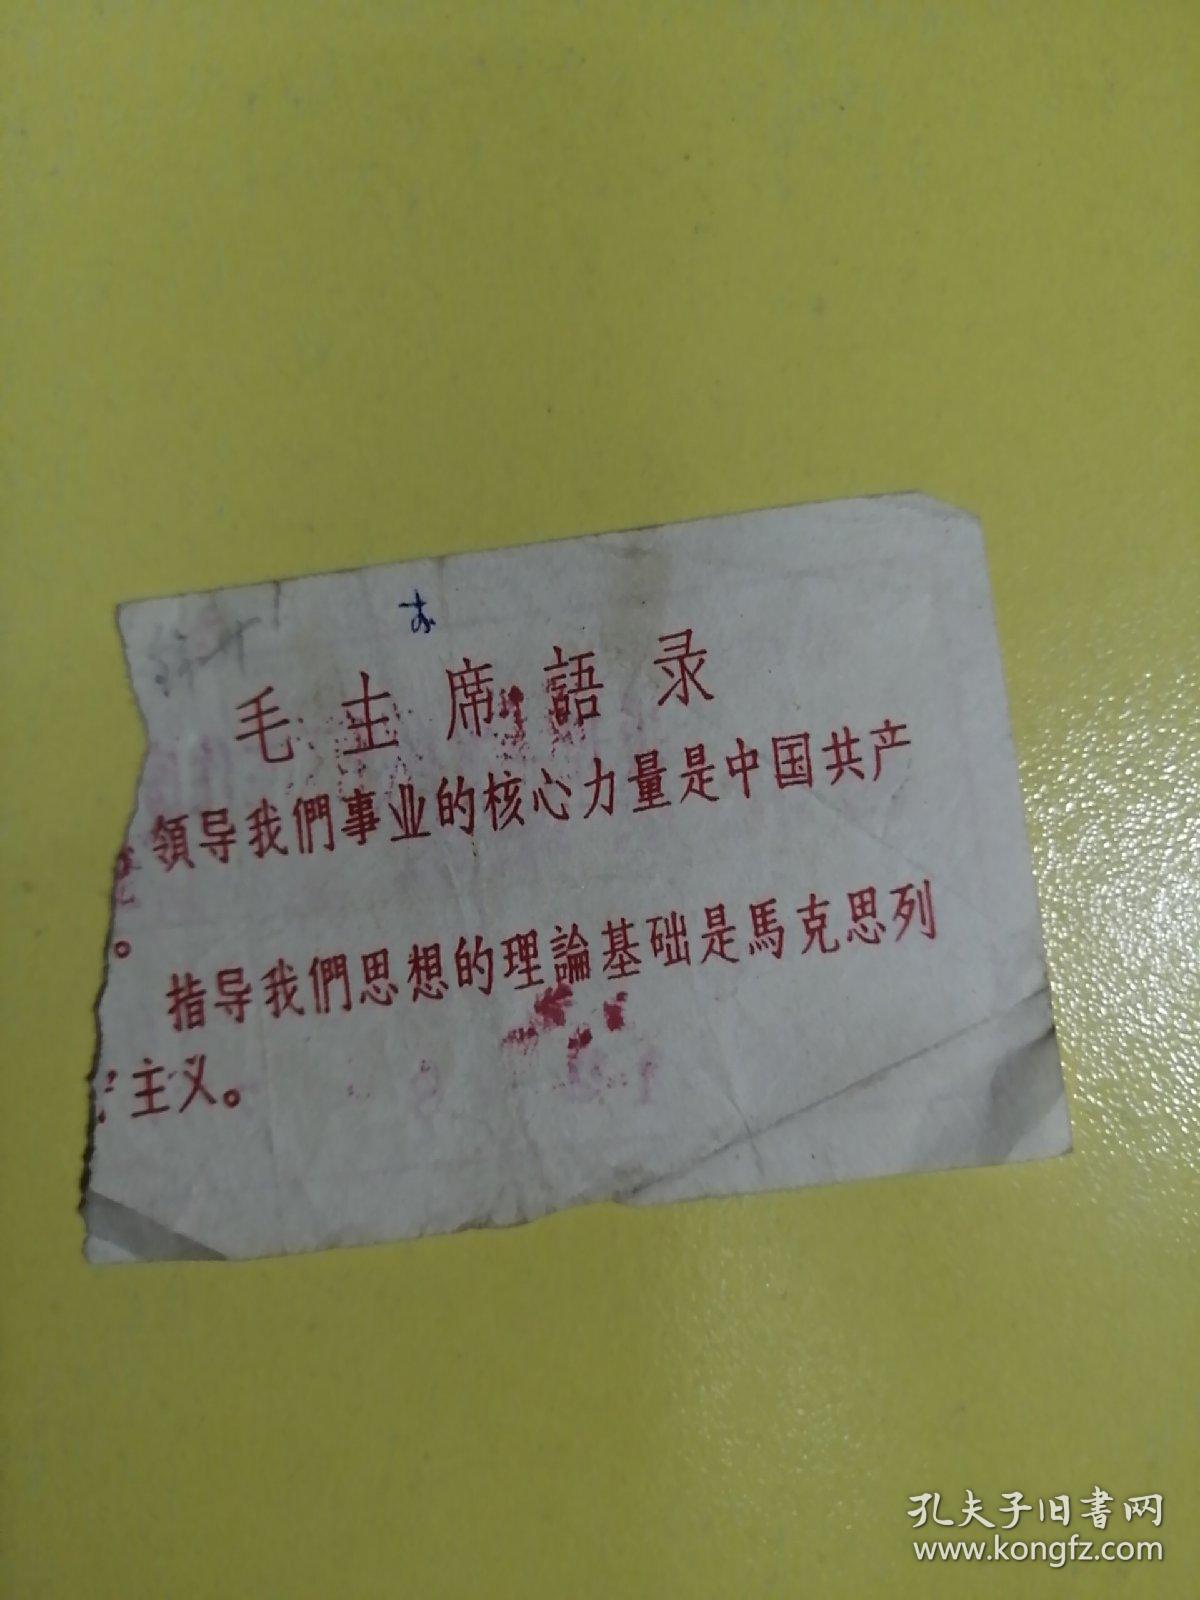 革命师生离京临时乘坐火车证。北京至沈阳。往返一次有效下车作废。